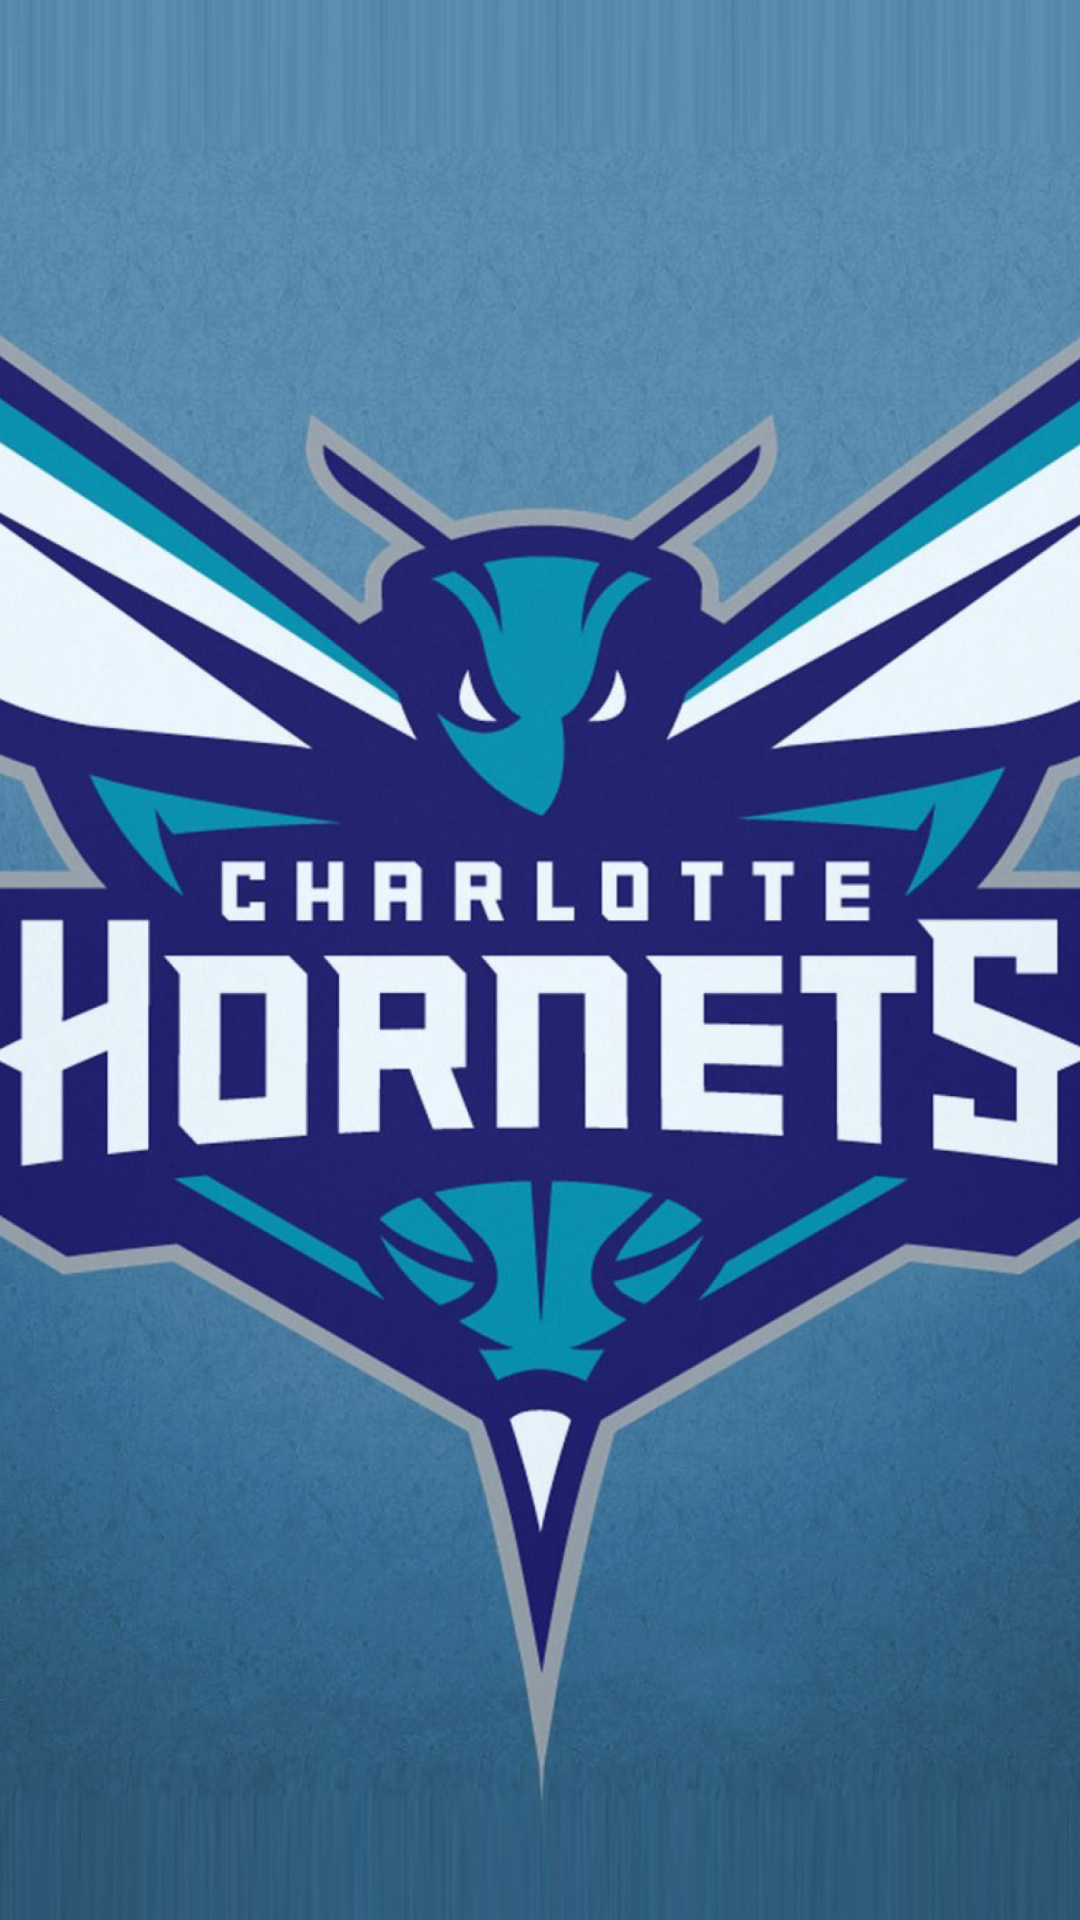 Charlotte Hornets wallpaper 1080x1920